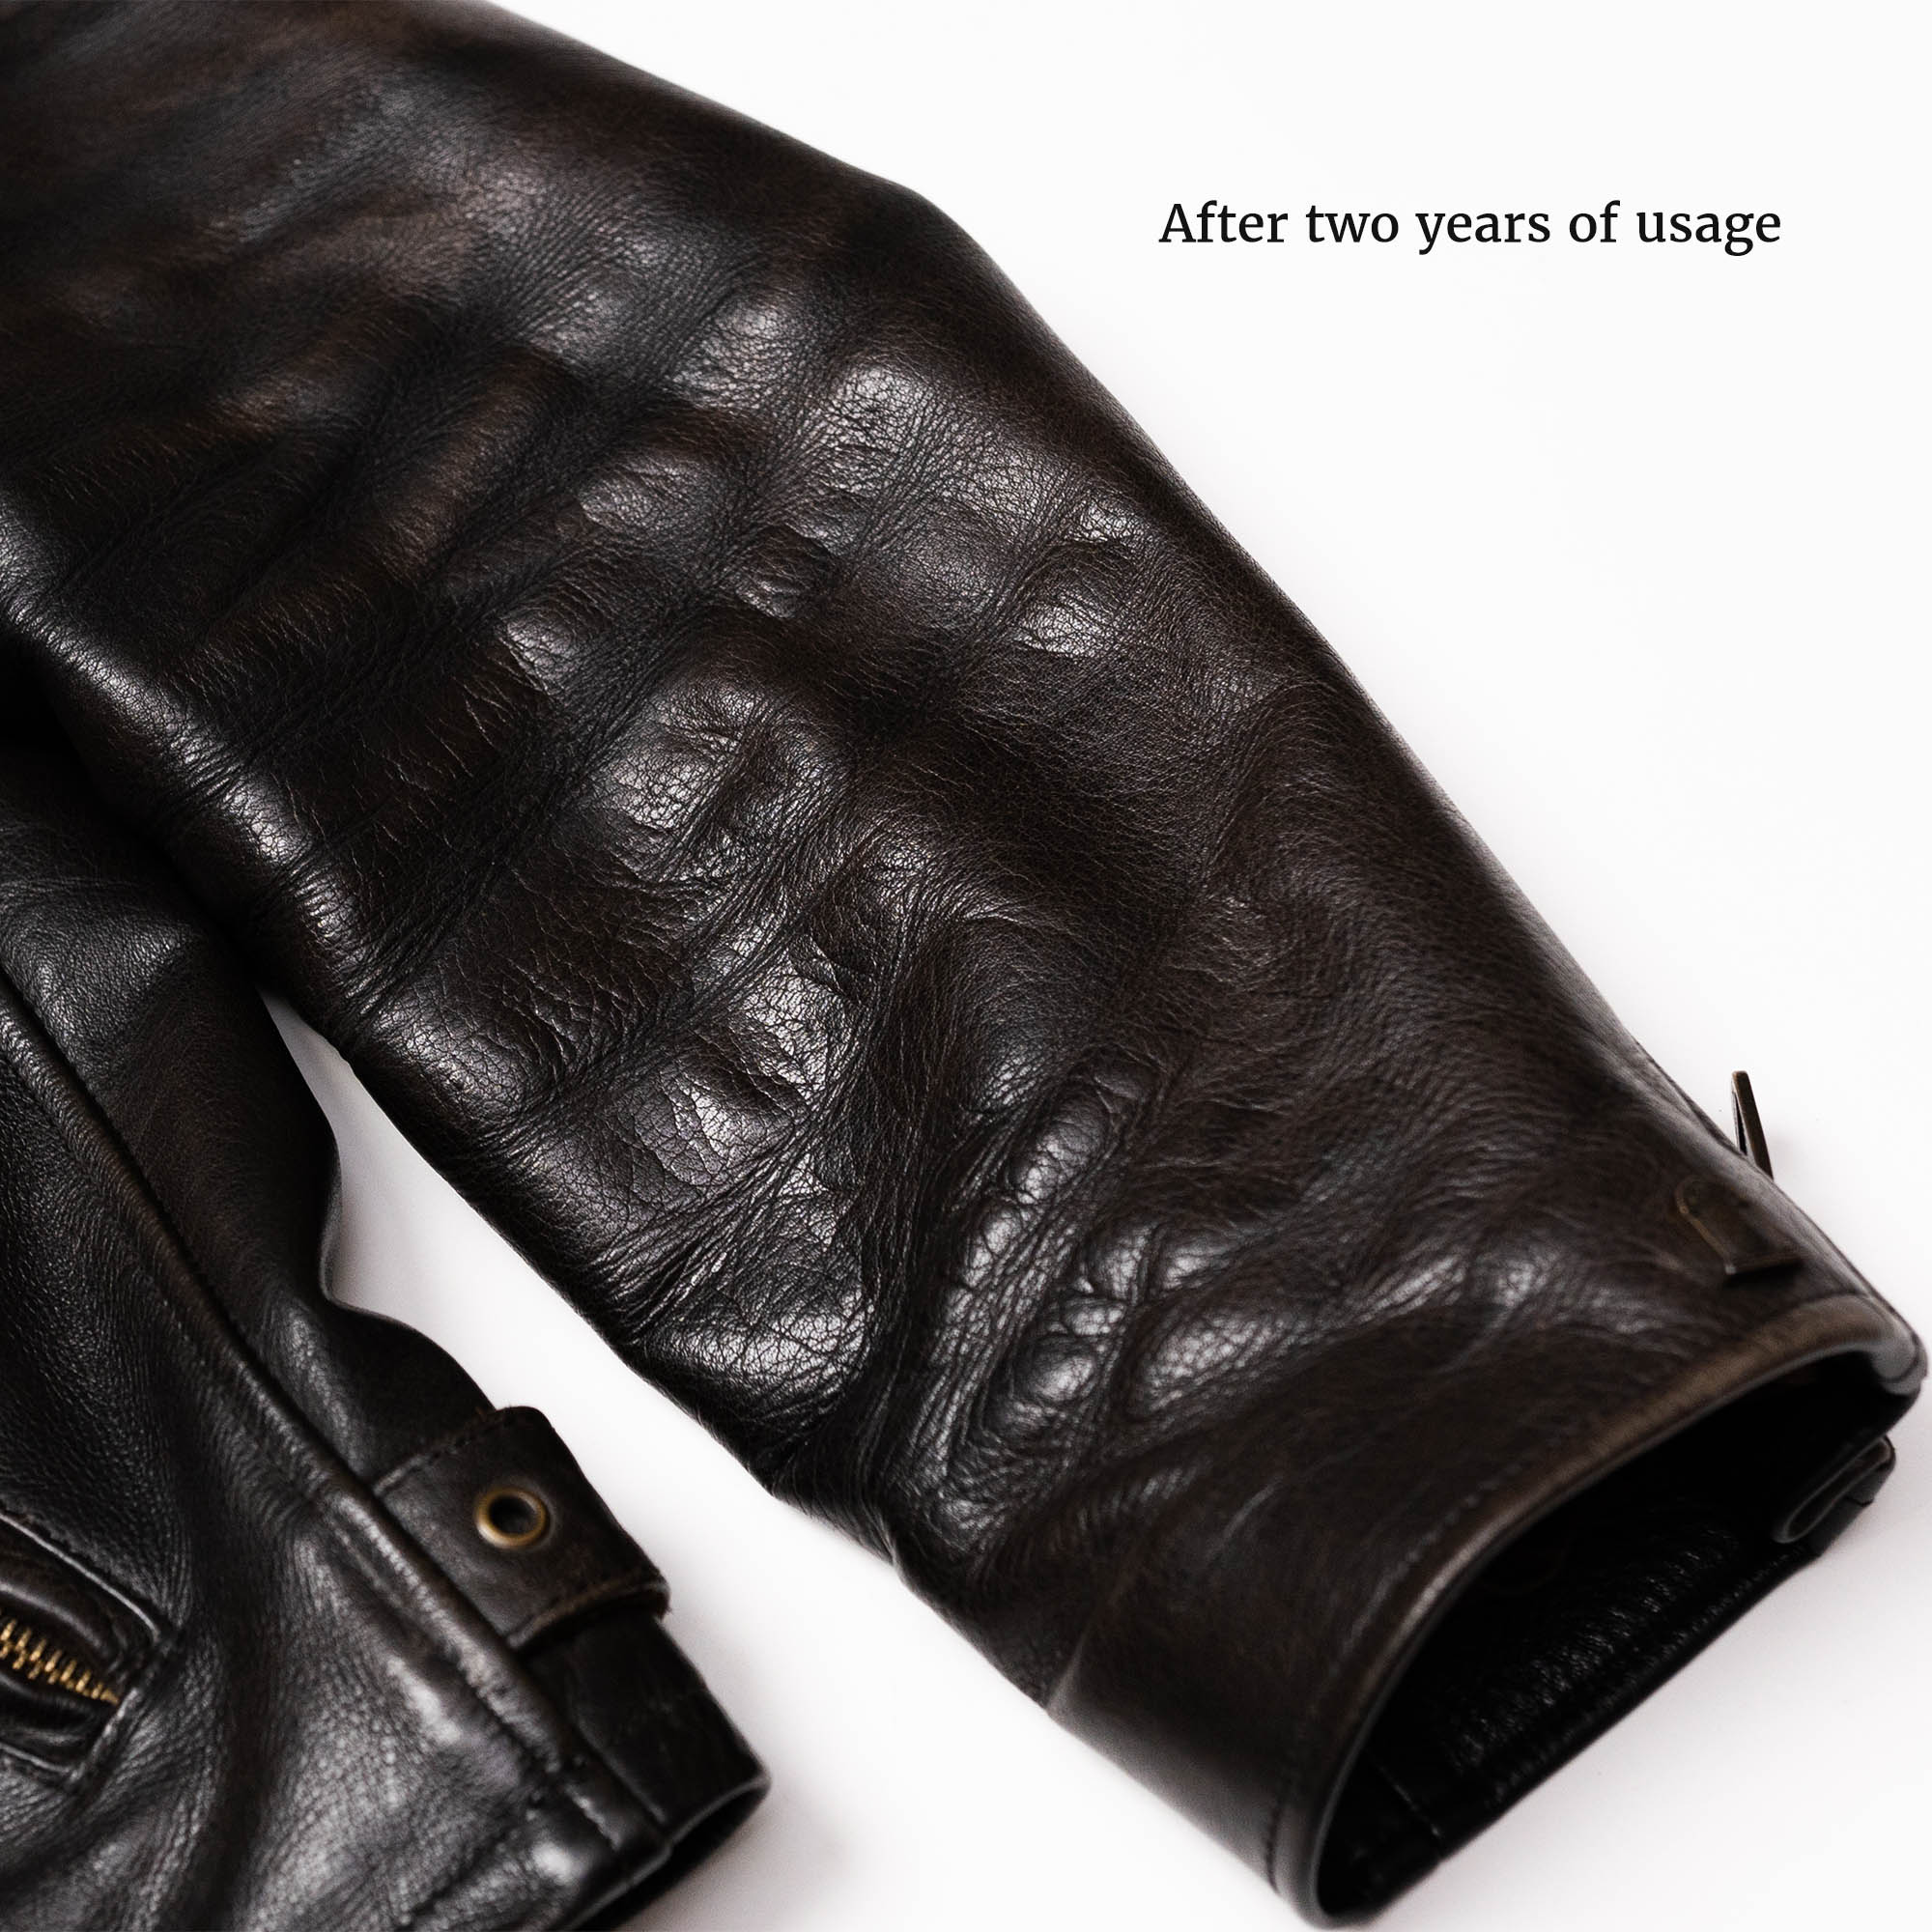 “Varenne” Black Leather Jacket